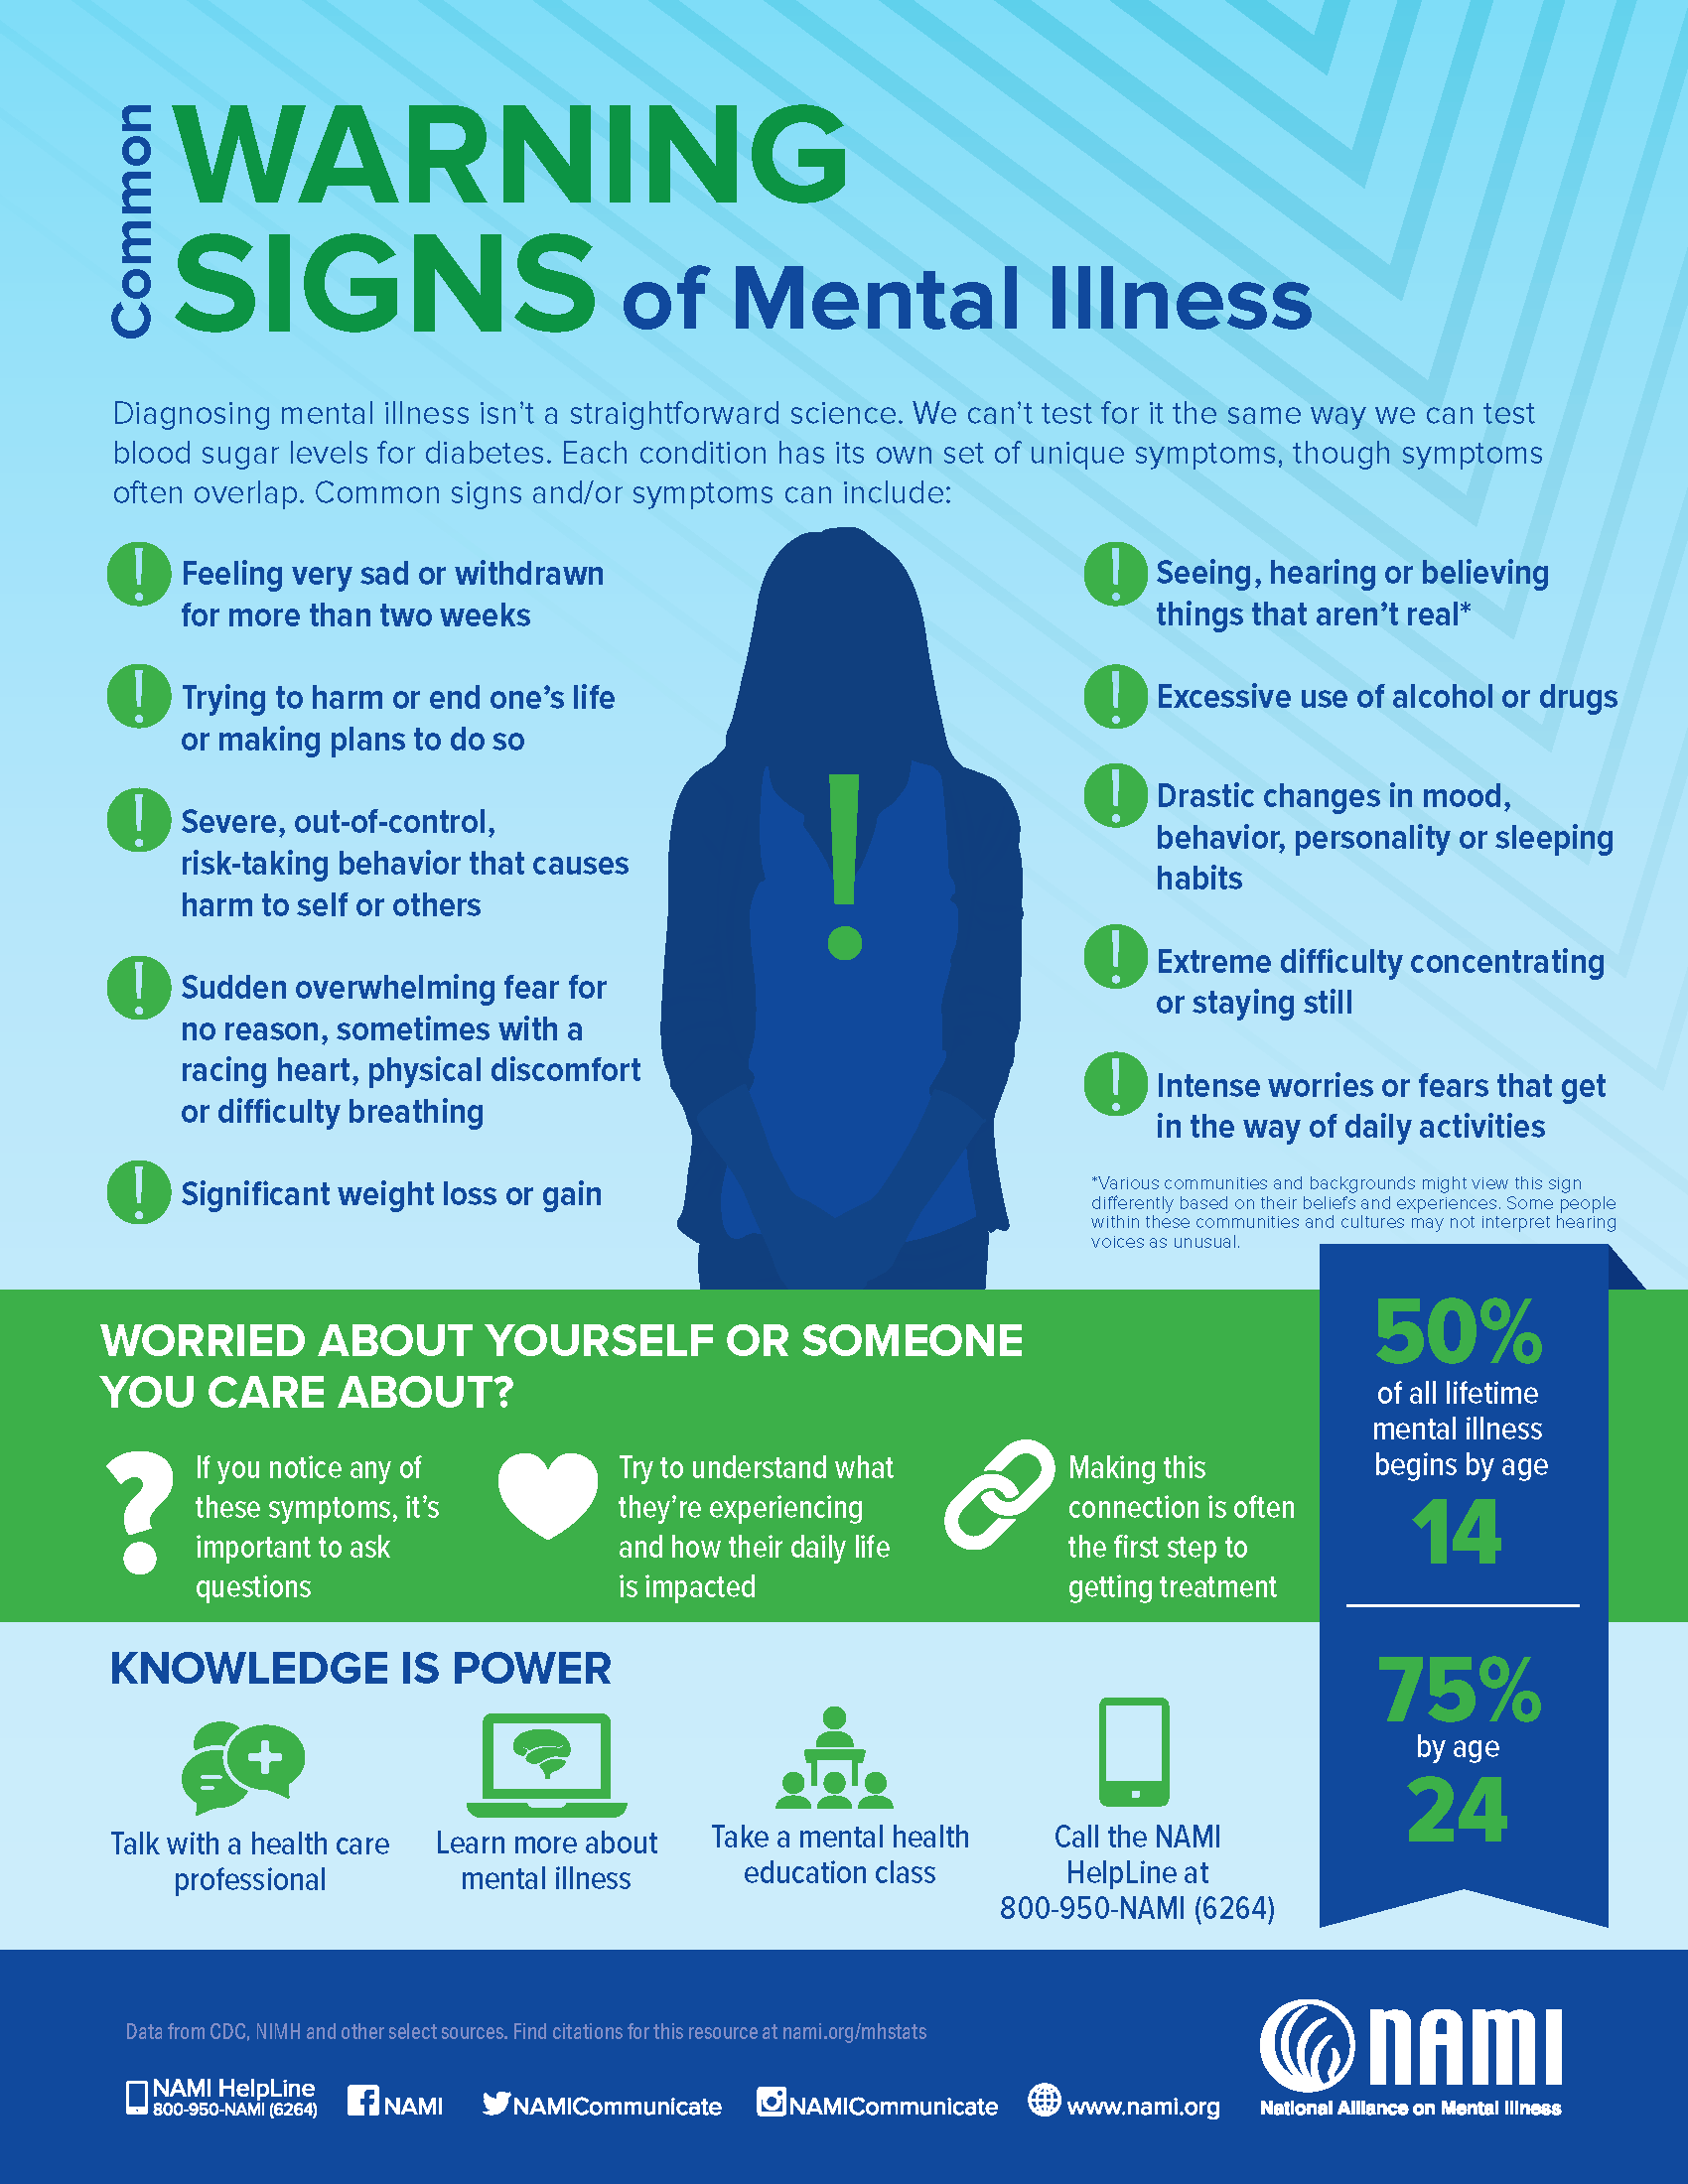 13 Warning Signs of Mental Illness